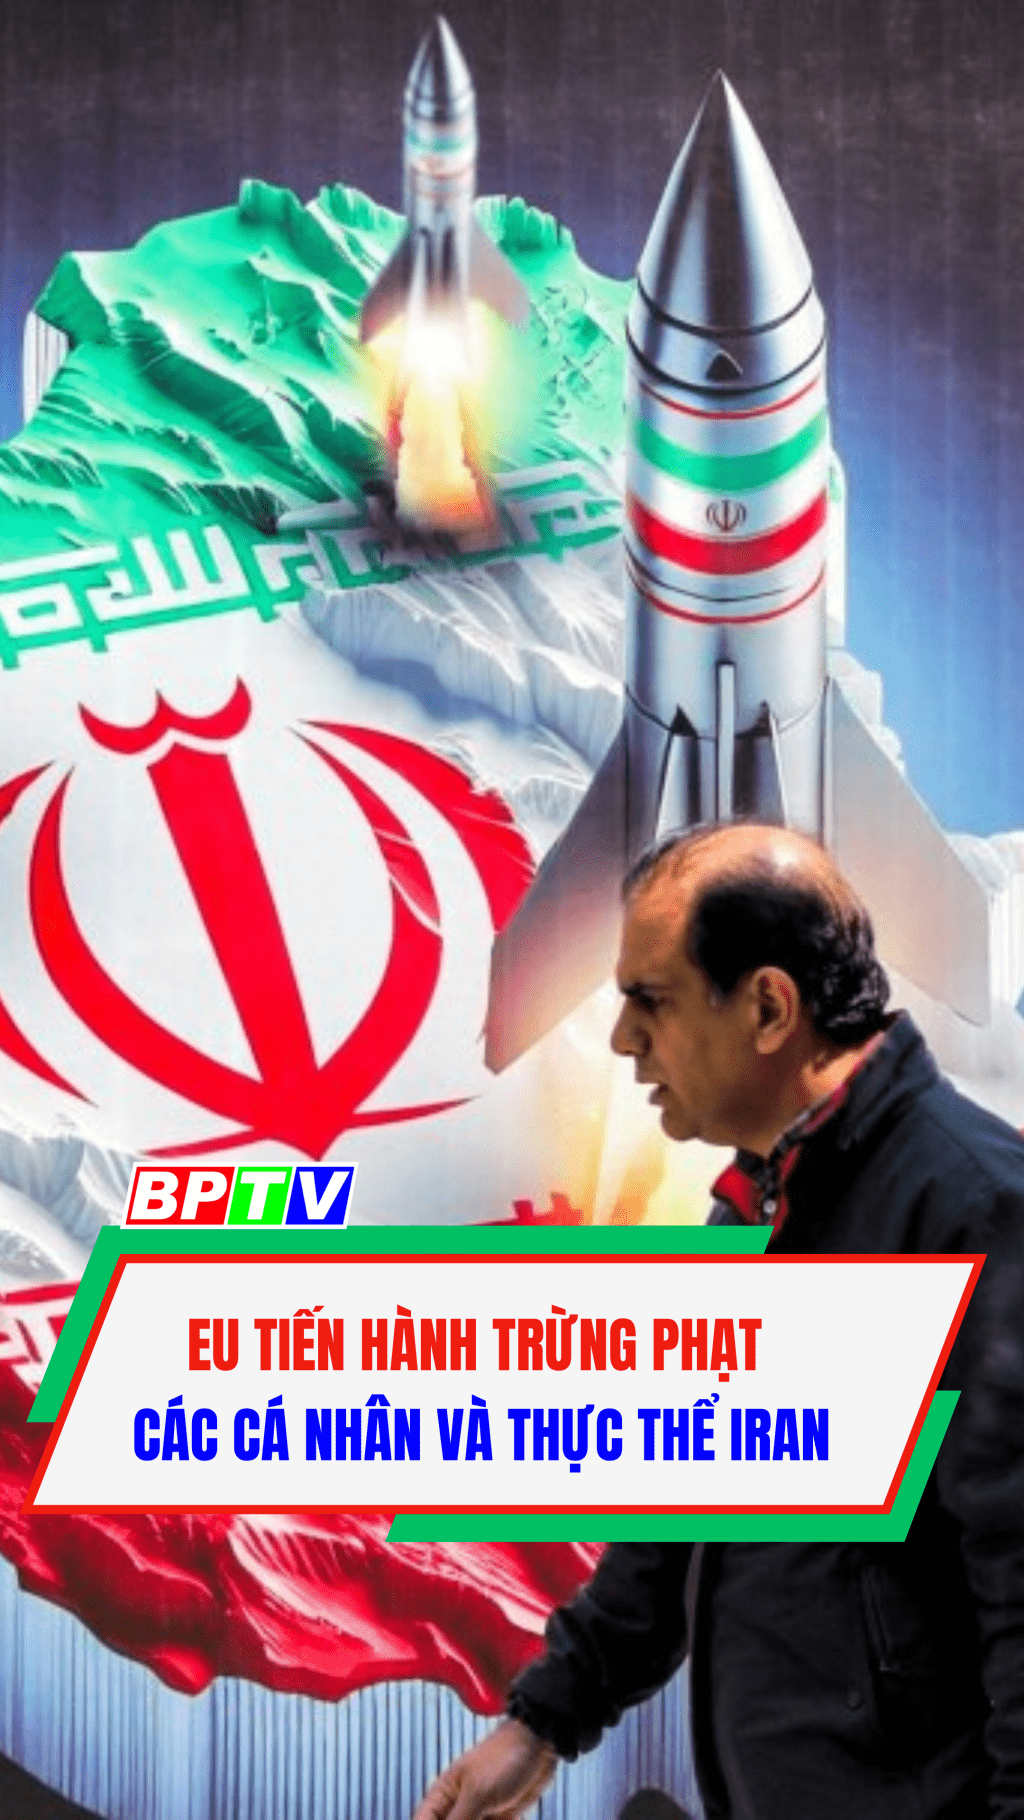 EU trừng phạt các cá nhân và thực thể Iran #shorts